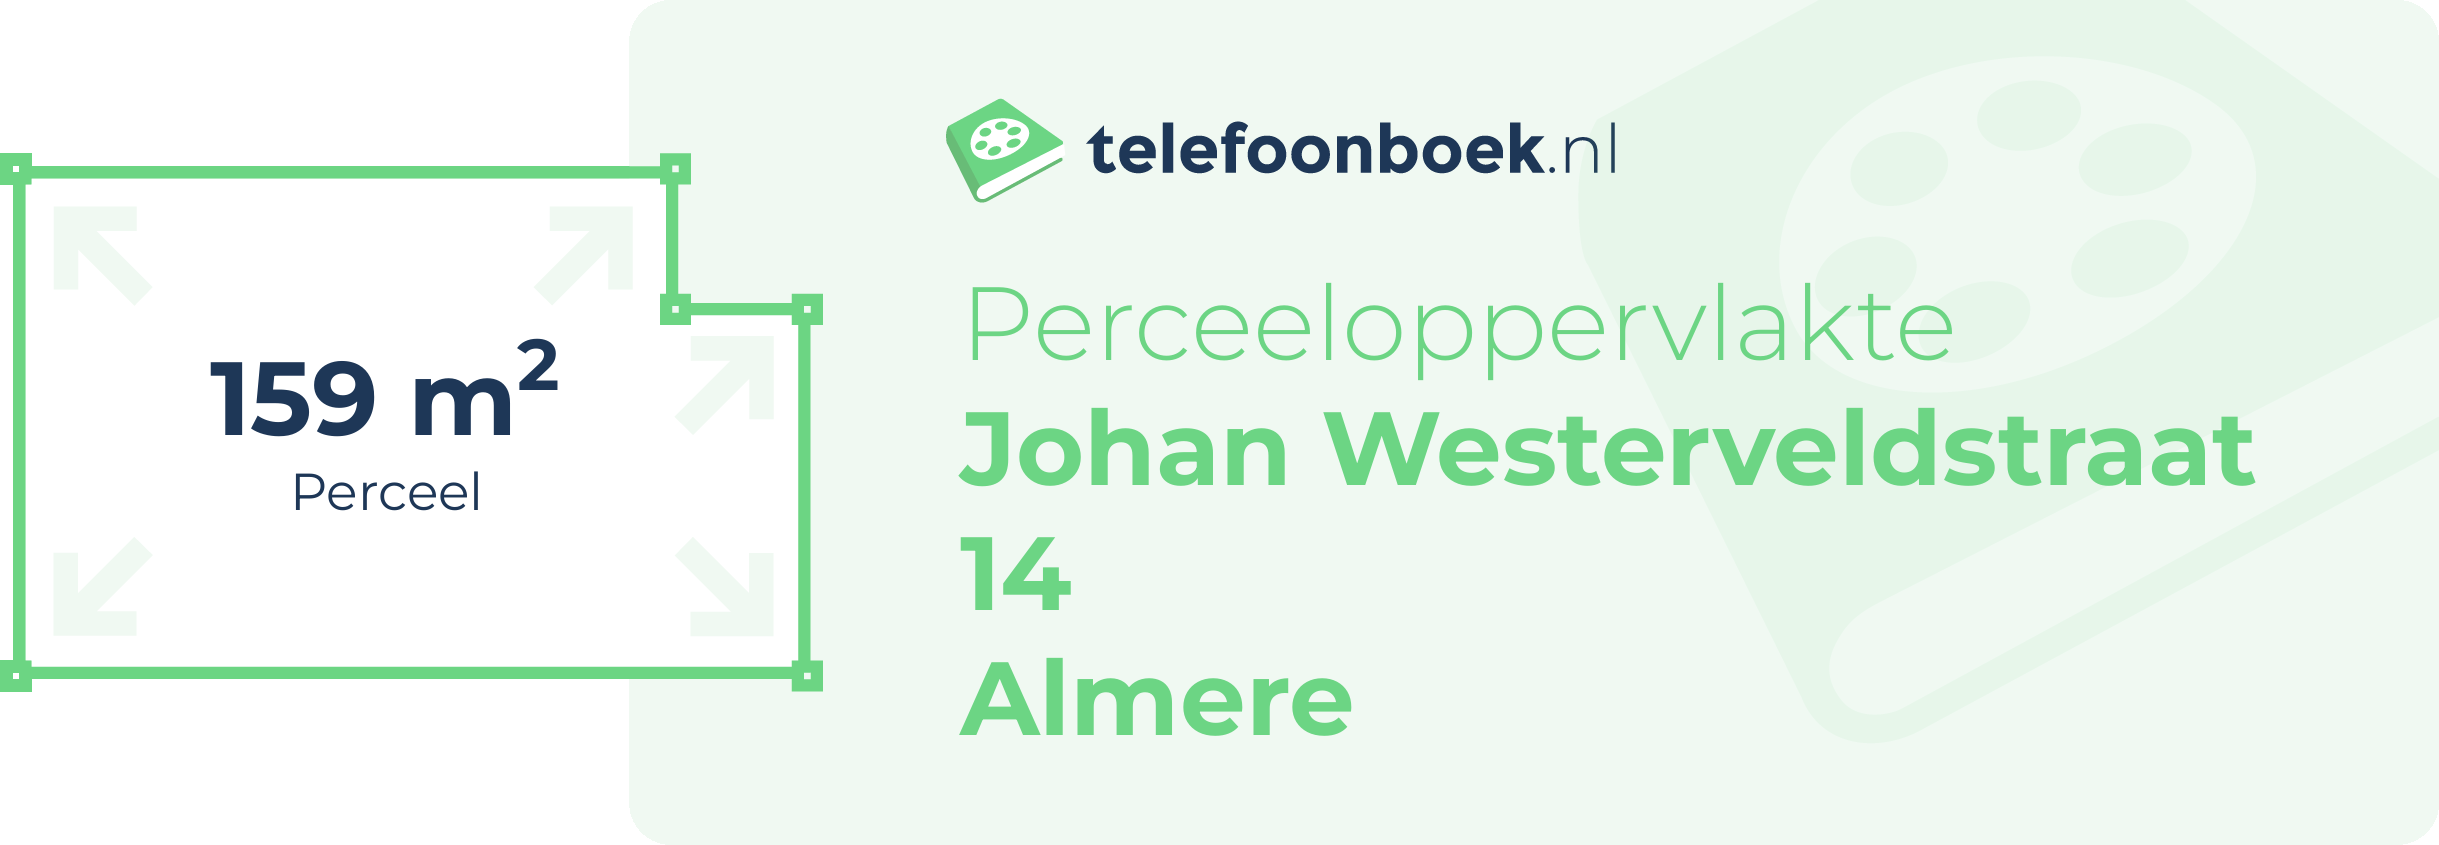 Perceeloppervlakte Johan Westerveldstraat 14 Almere